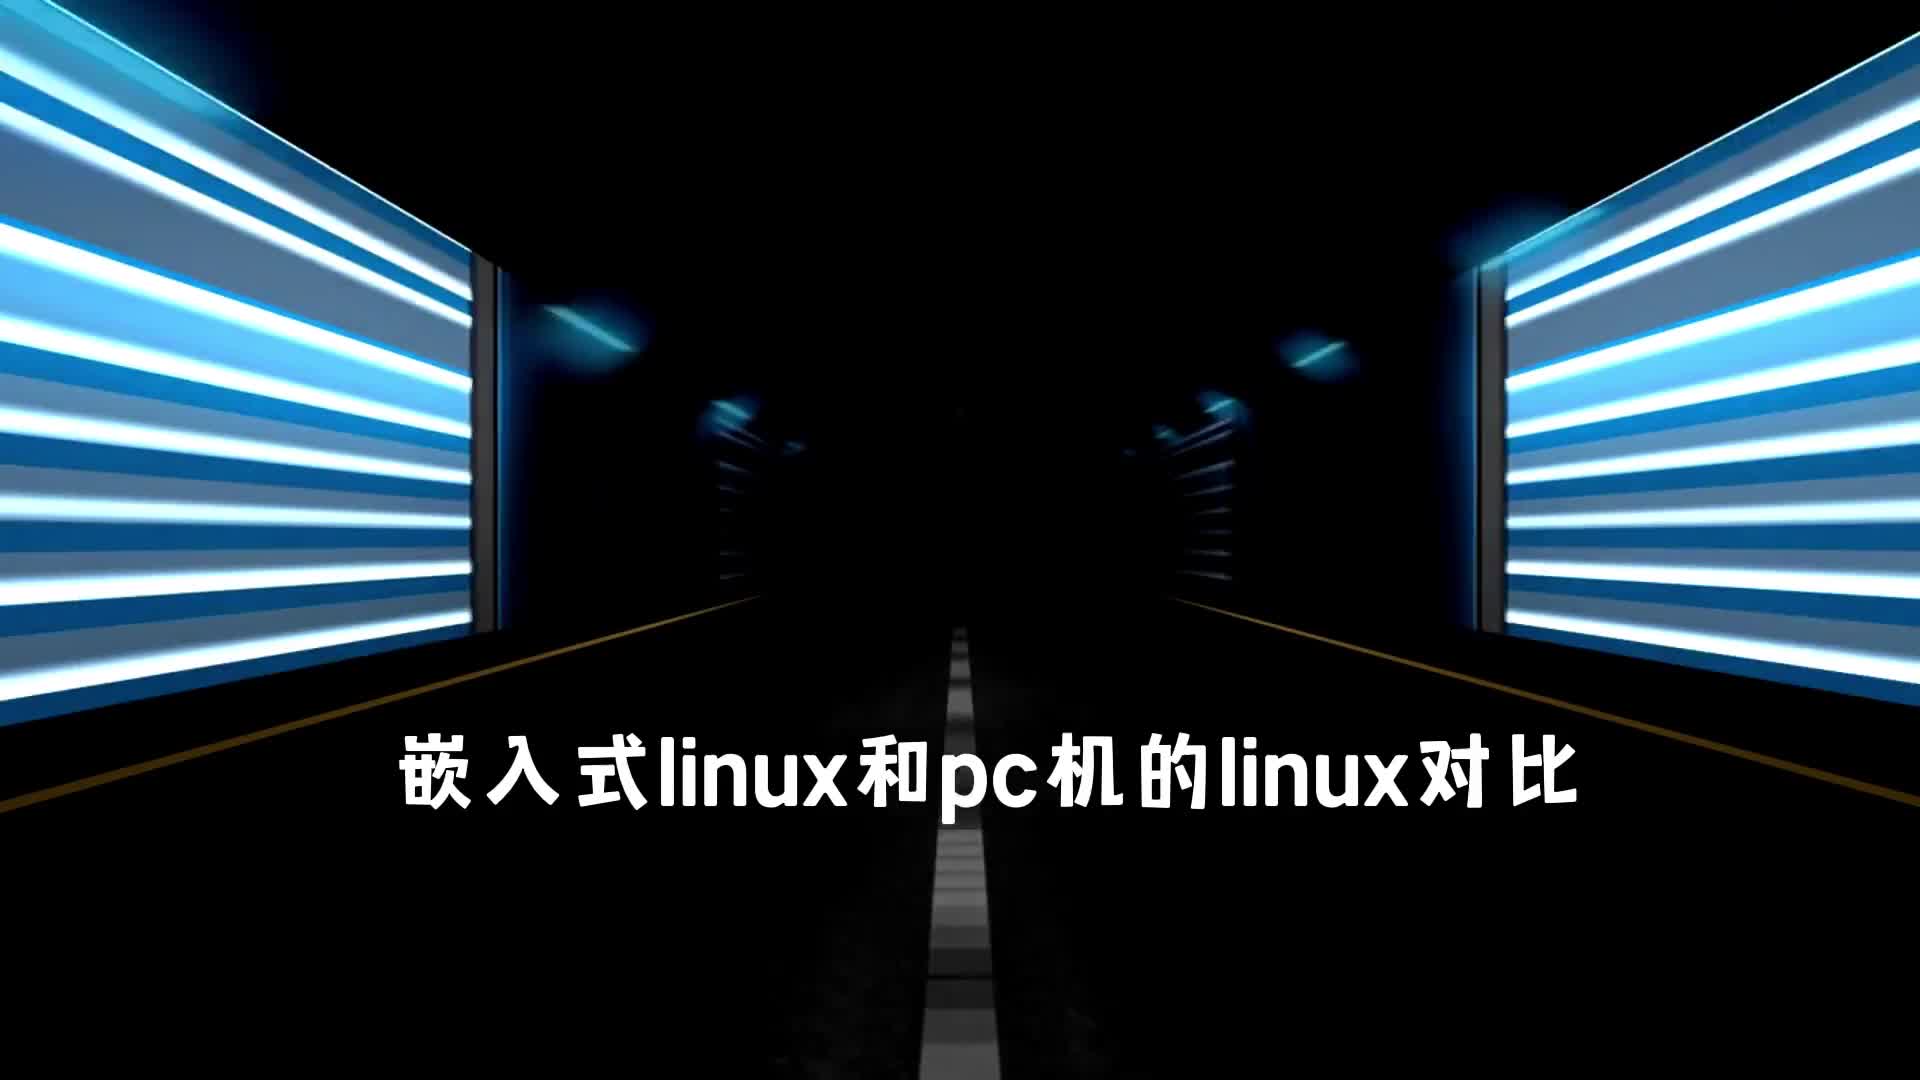 嵌入式linux和pc机的linux对比 (1)